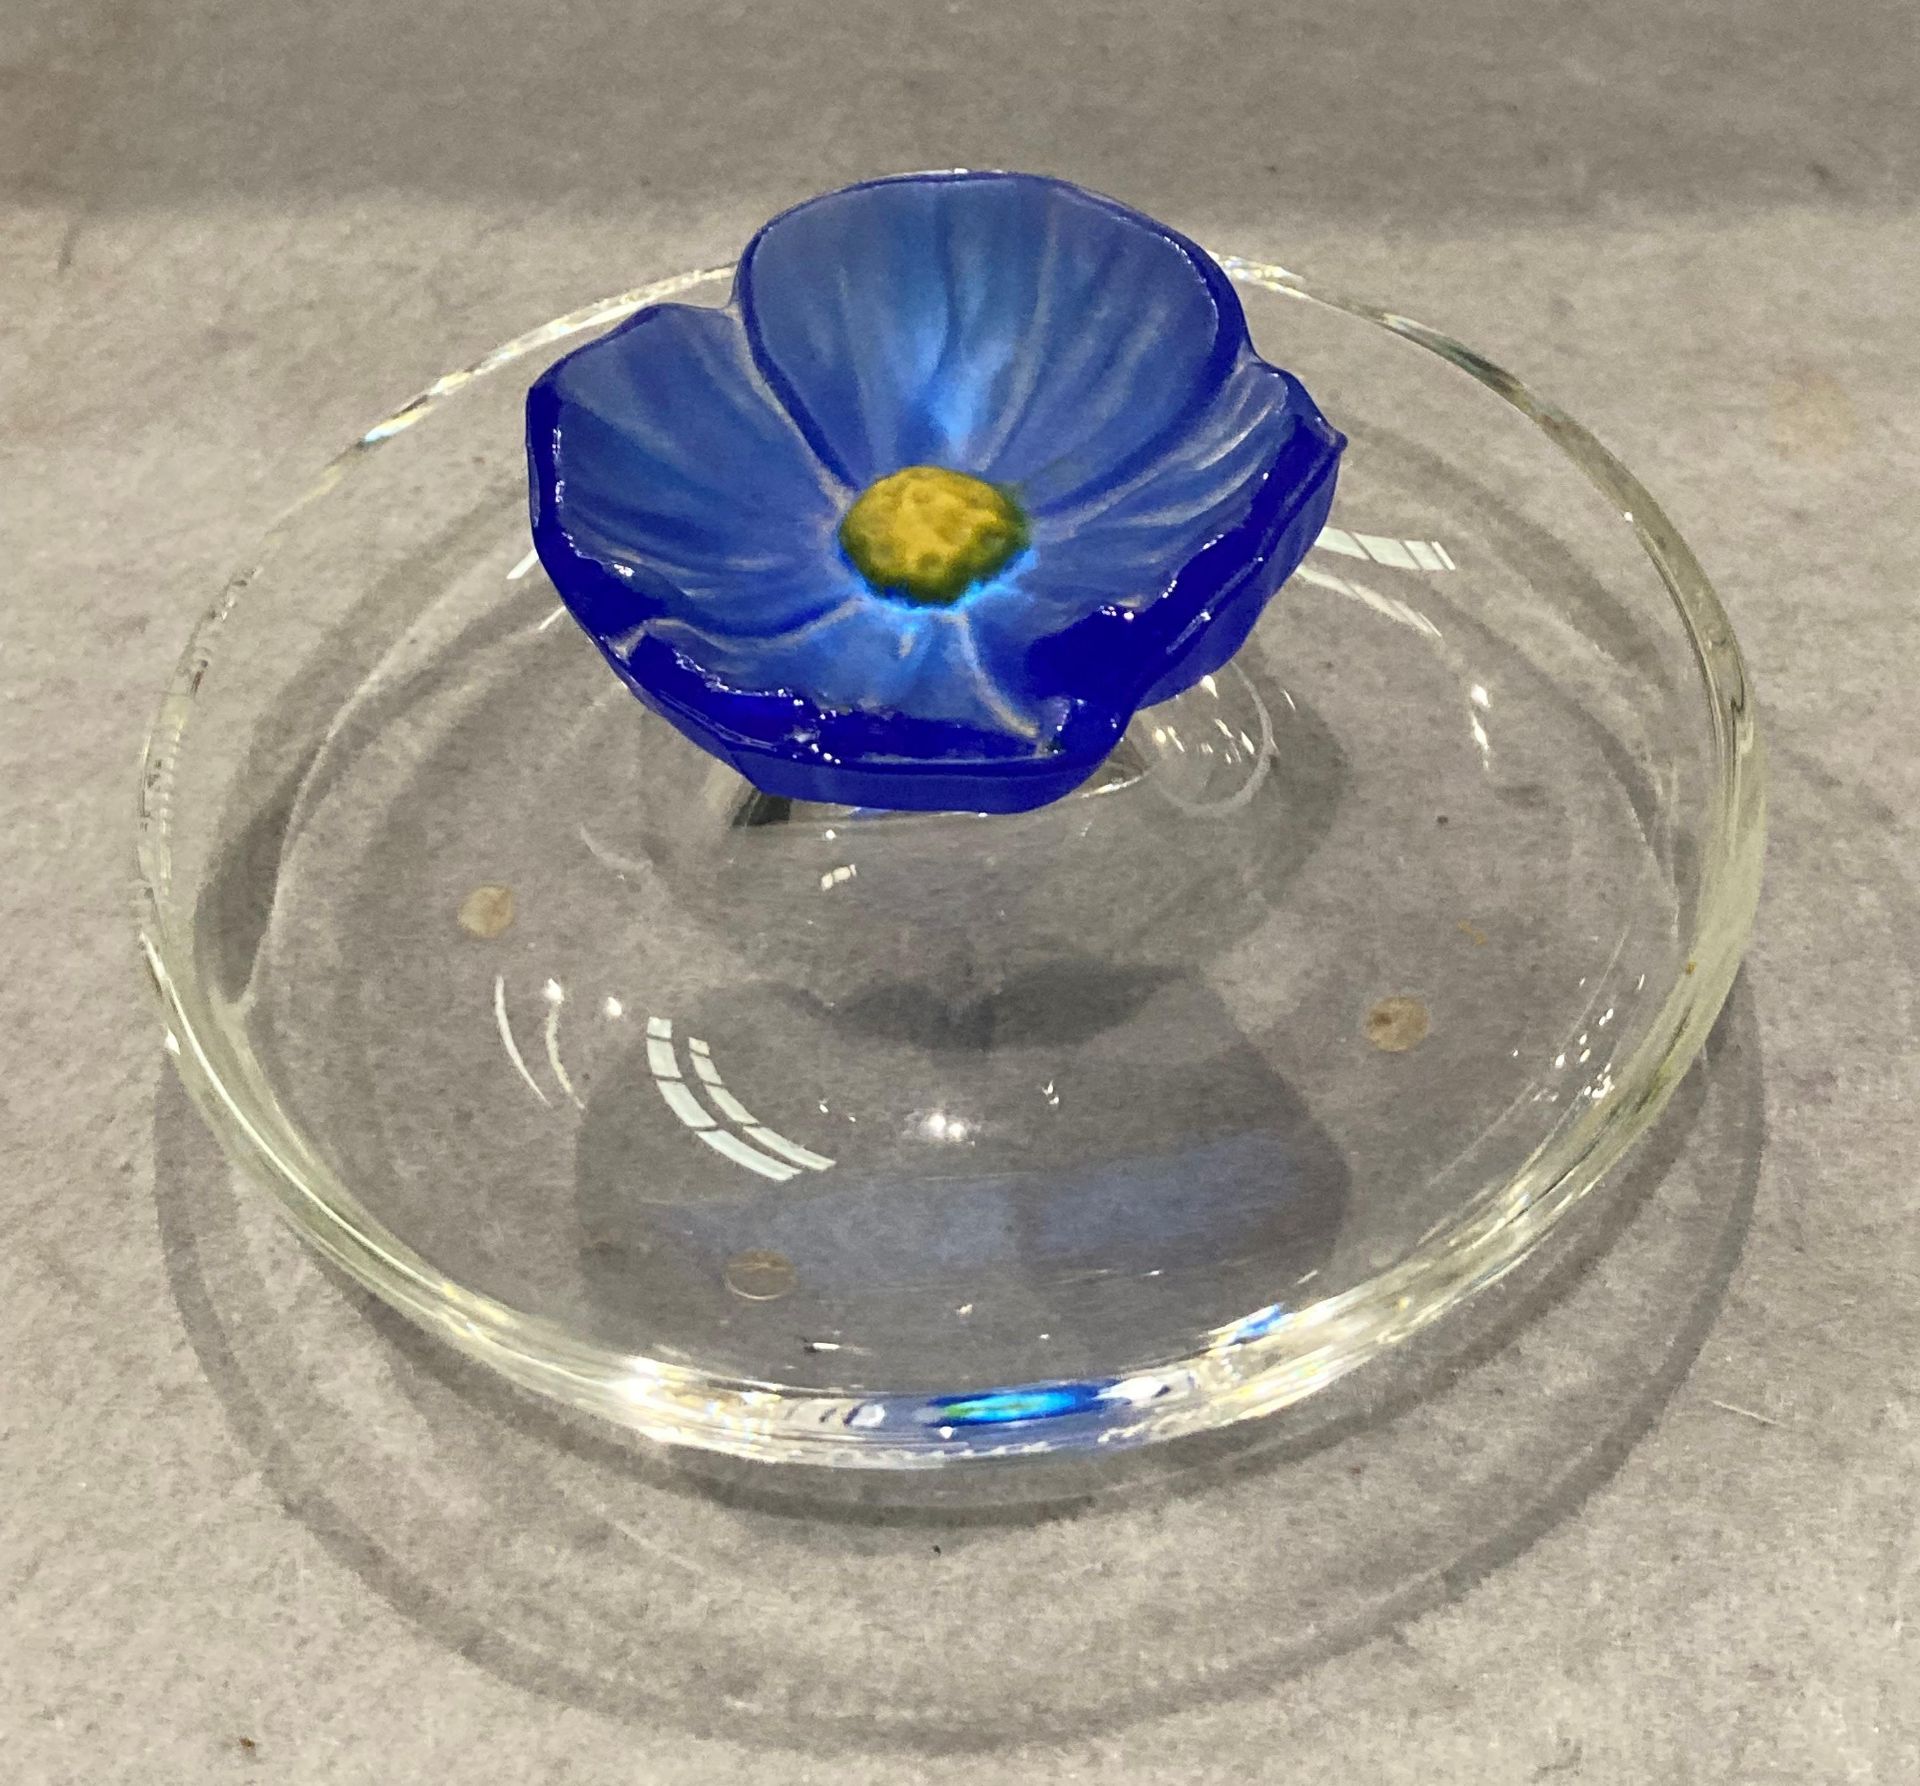 A Daum France Coupelle Cactus Fleur Bleu Franc modern pate de verre glass dish, - Image 2 of 5